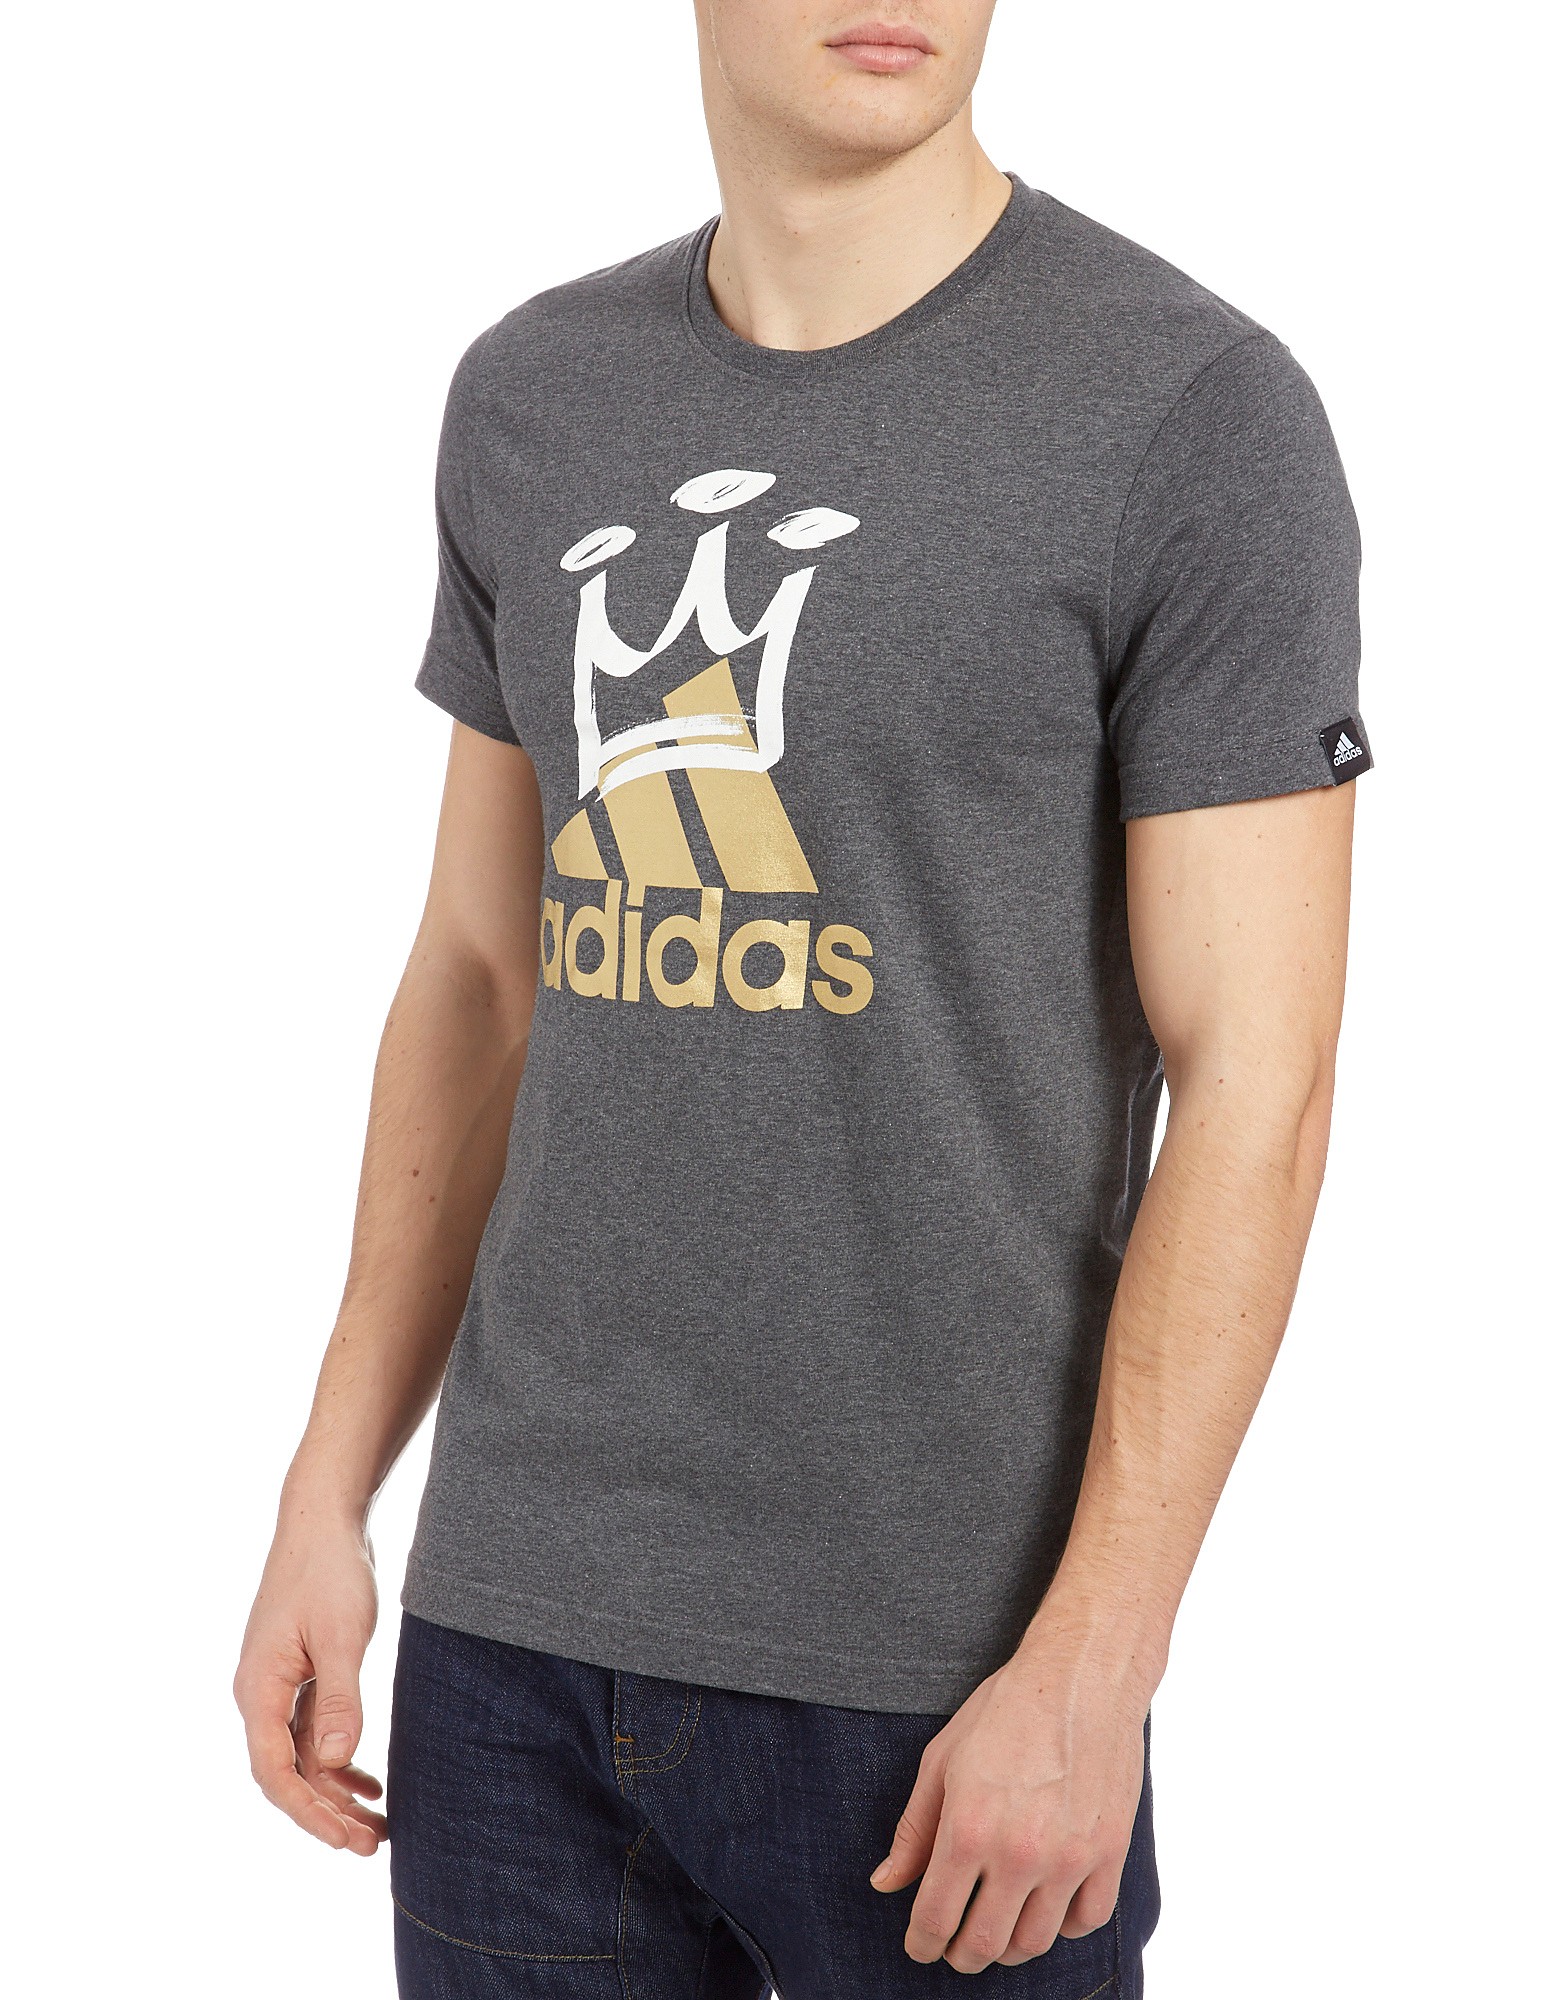 Adidas Perf King T-Shirt